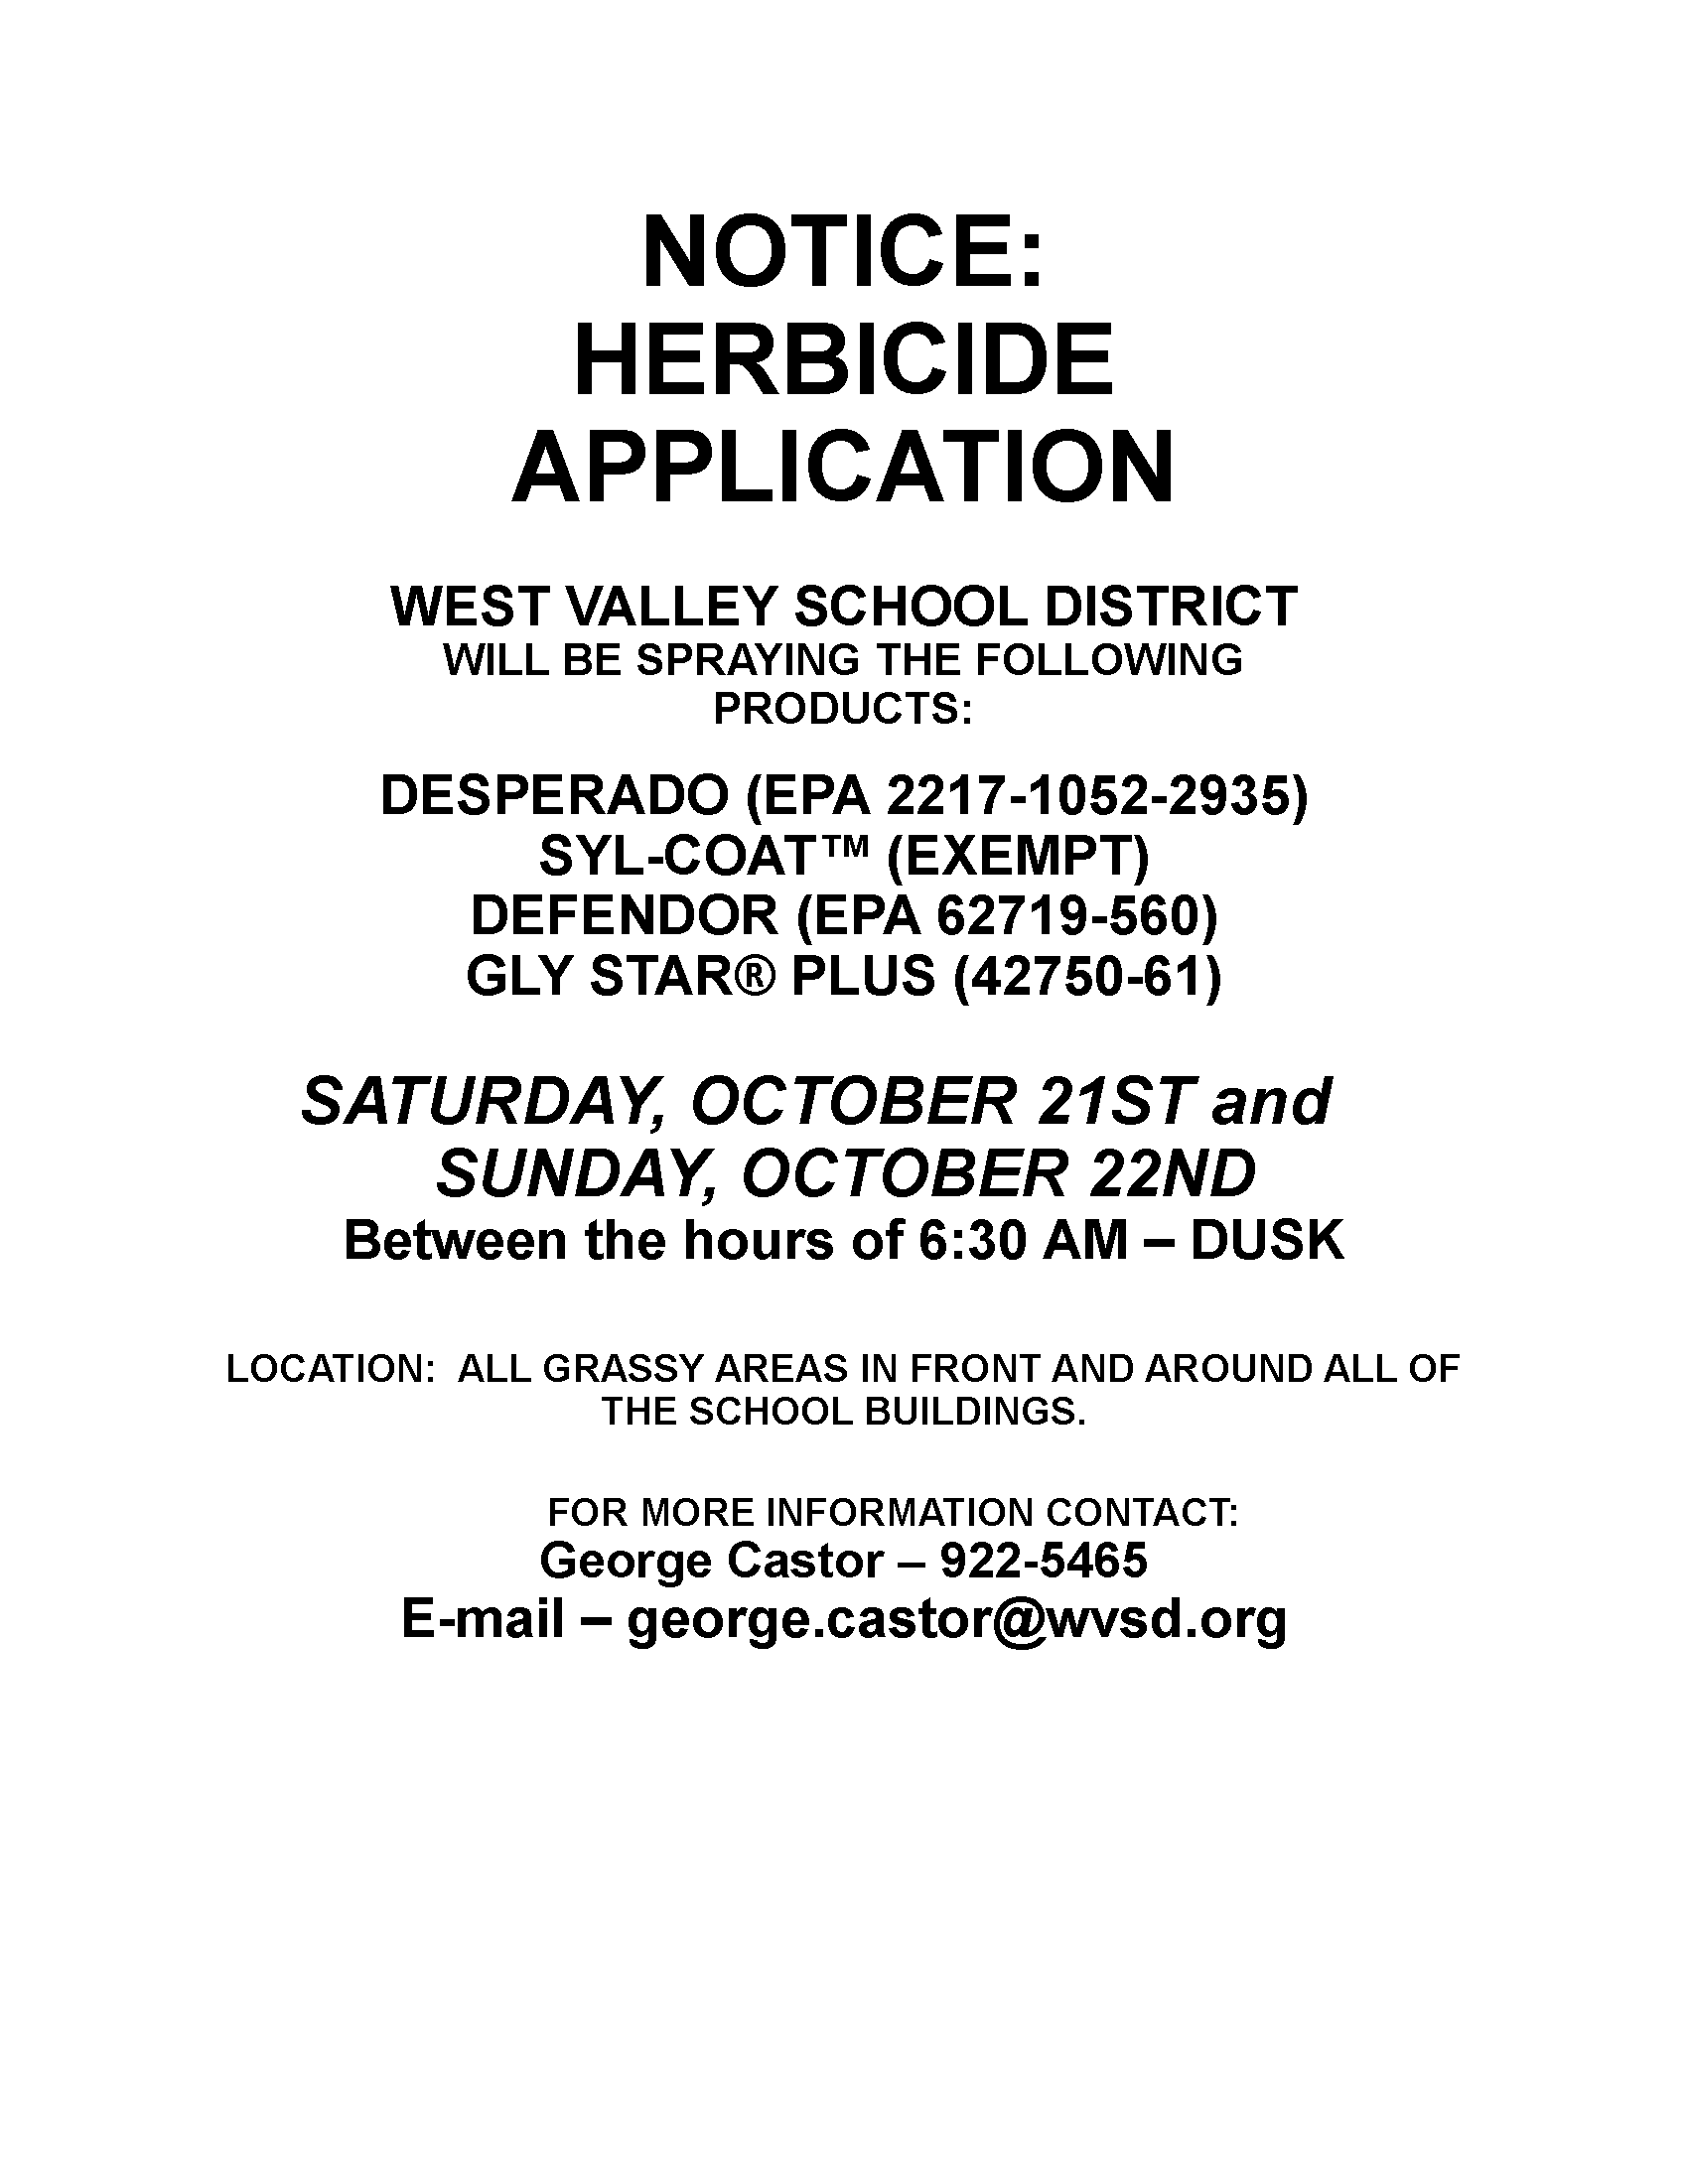 Herbicide notice